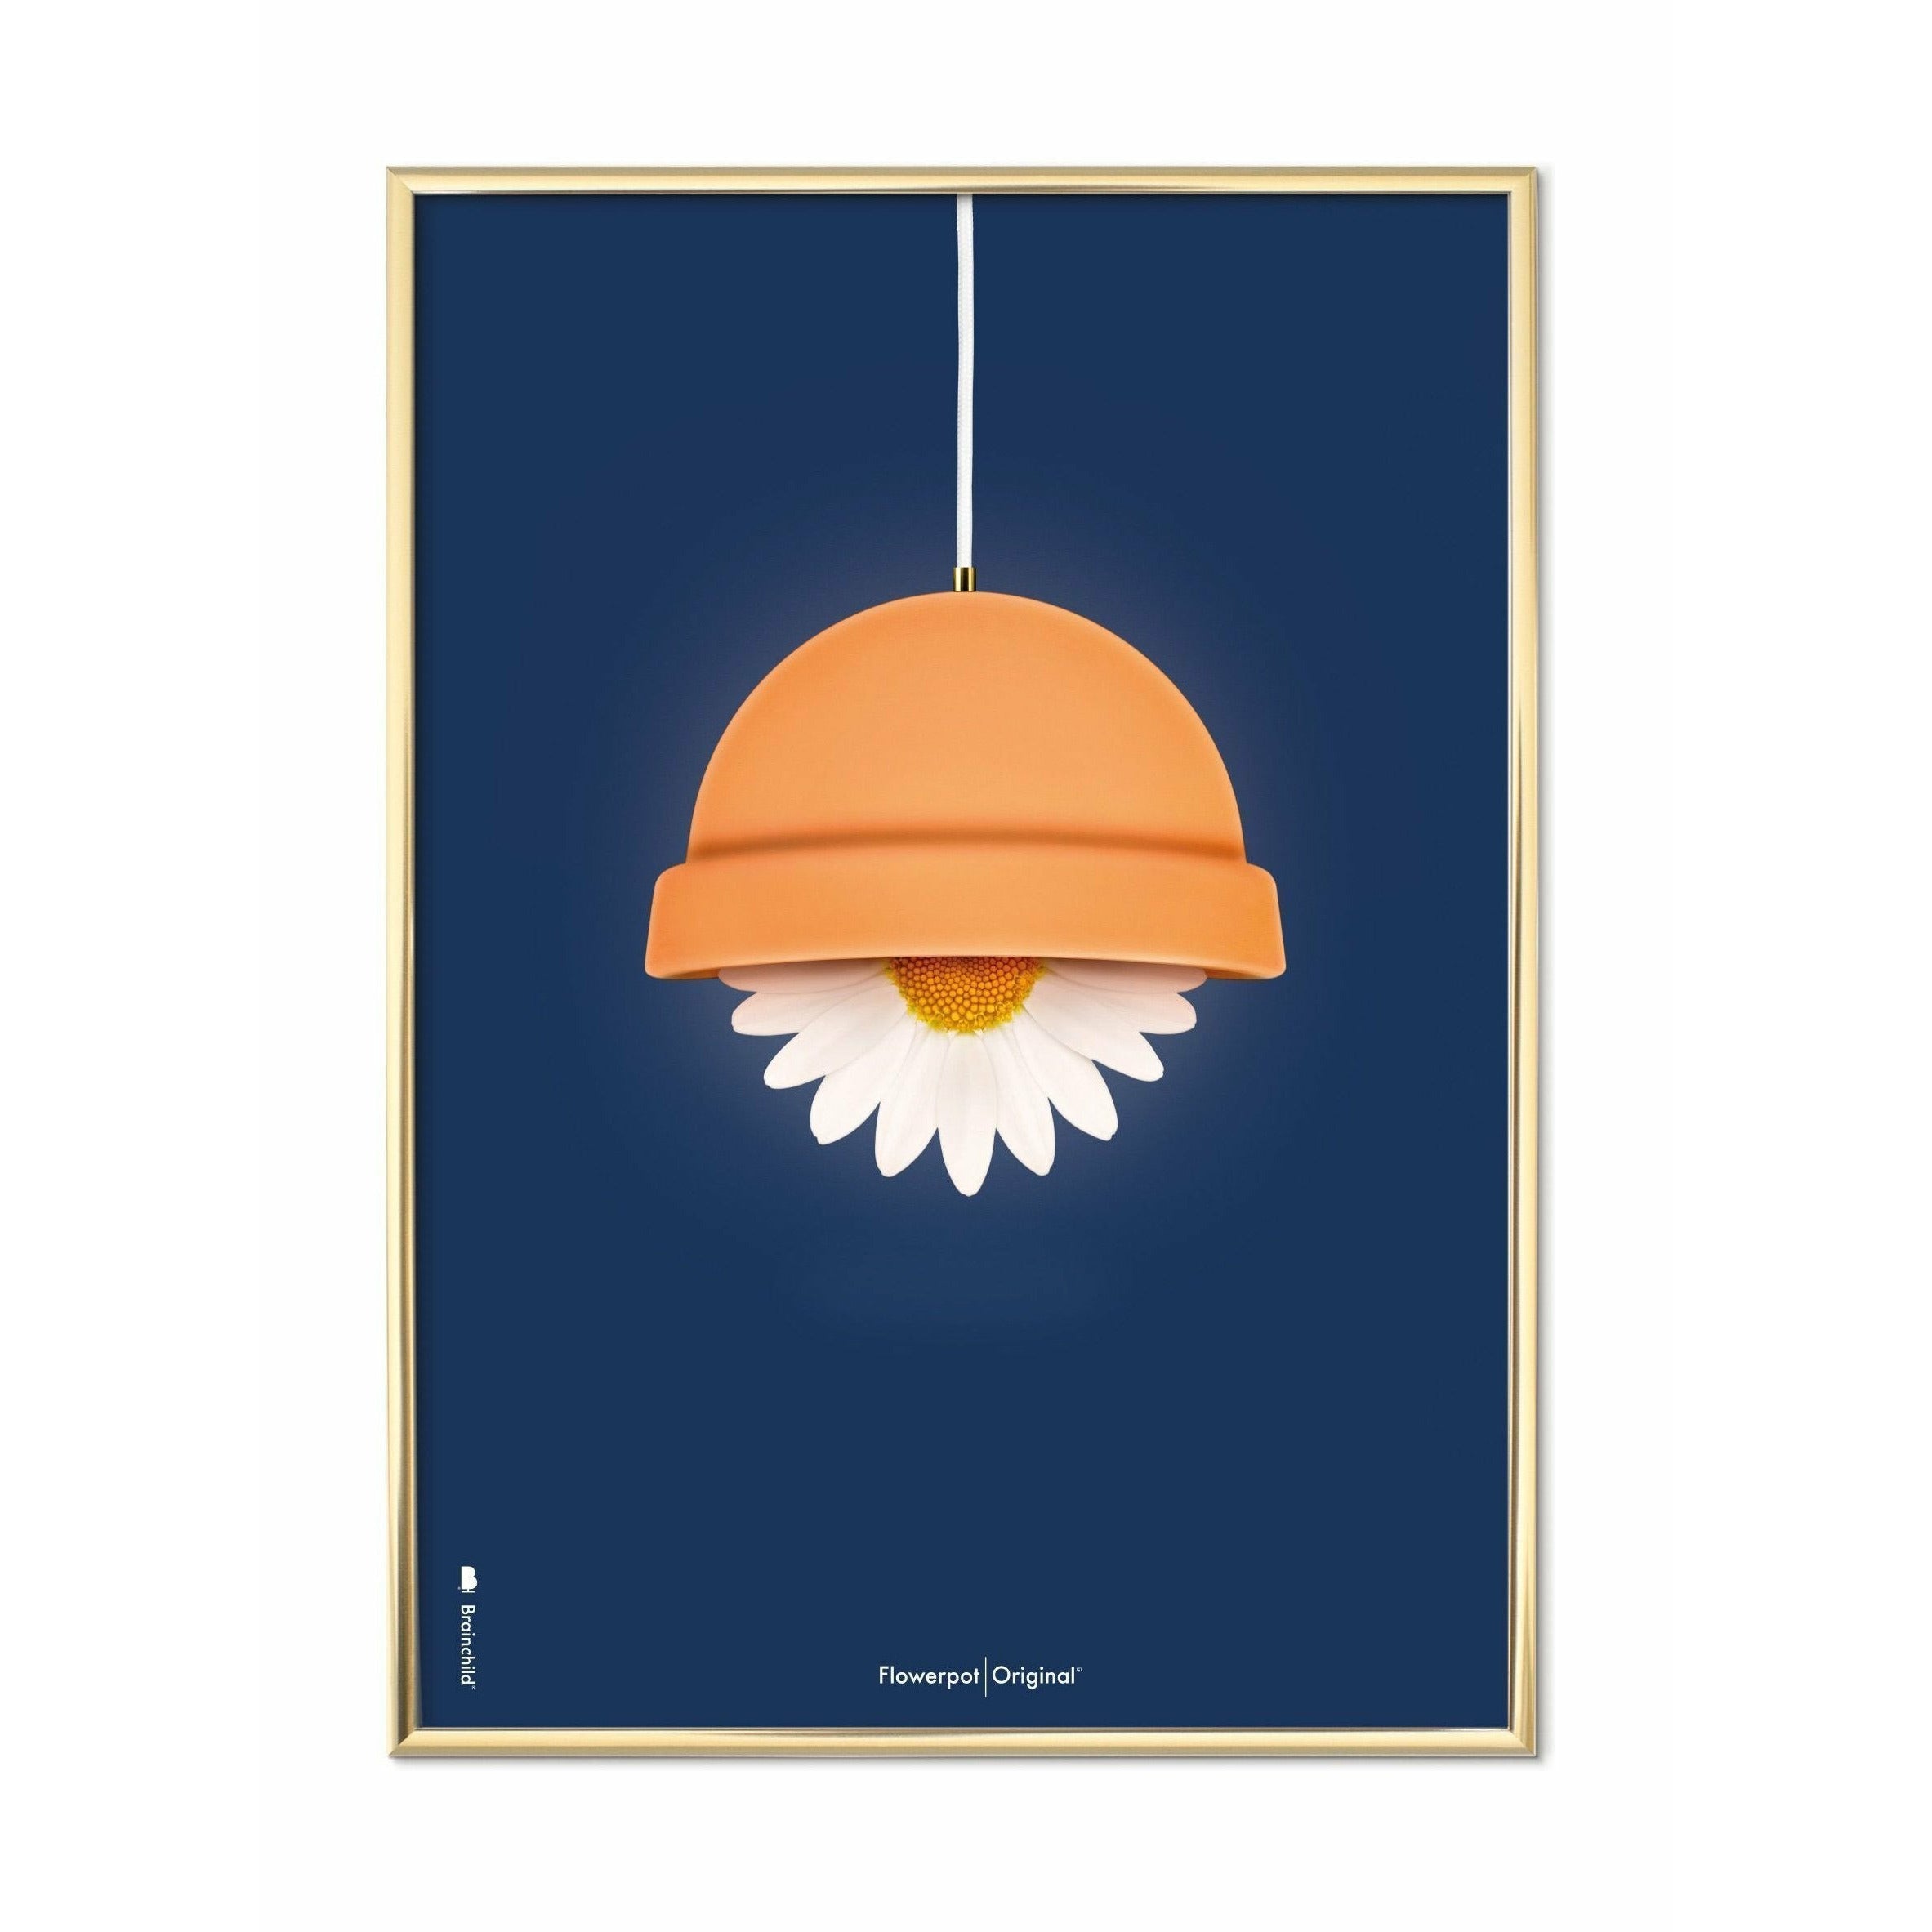 Brainchild Flowerpot Classic Poster, Brass Frame 50x70 Cm, Dark Blue Background